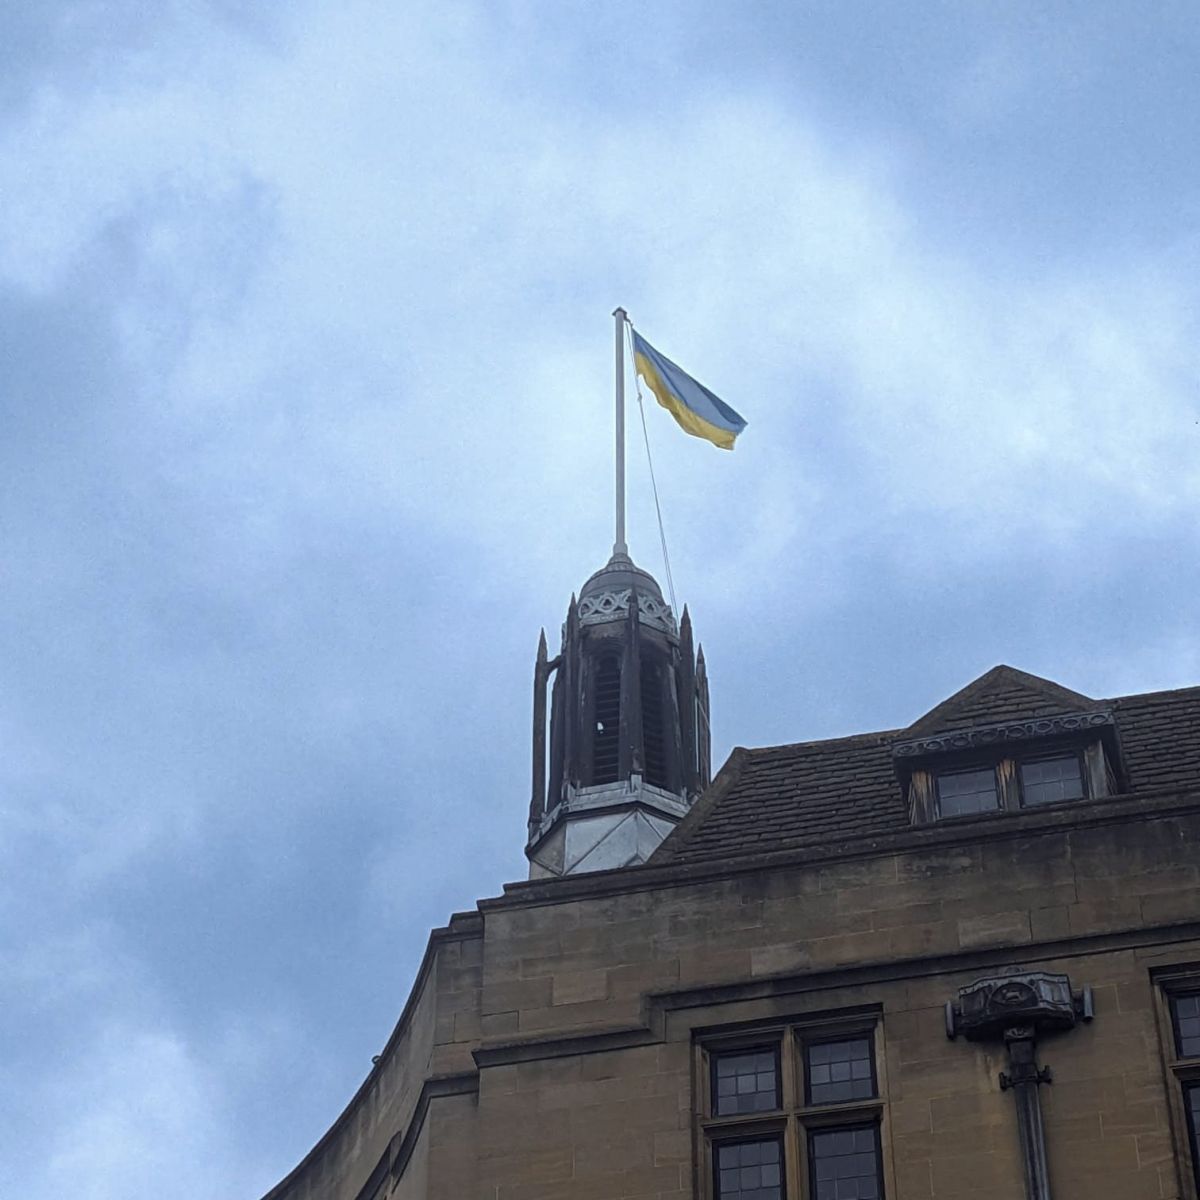 Підняли урочисто український прапор над будівлею міськради Оксфорду з нагоди Дня міста Харкова та Дня Незалежності України